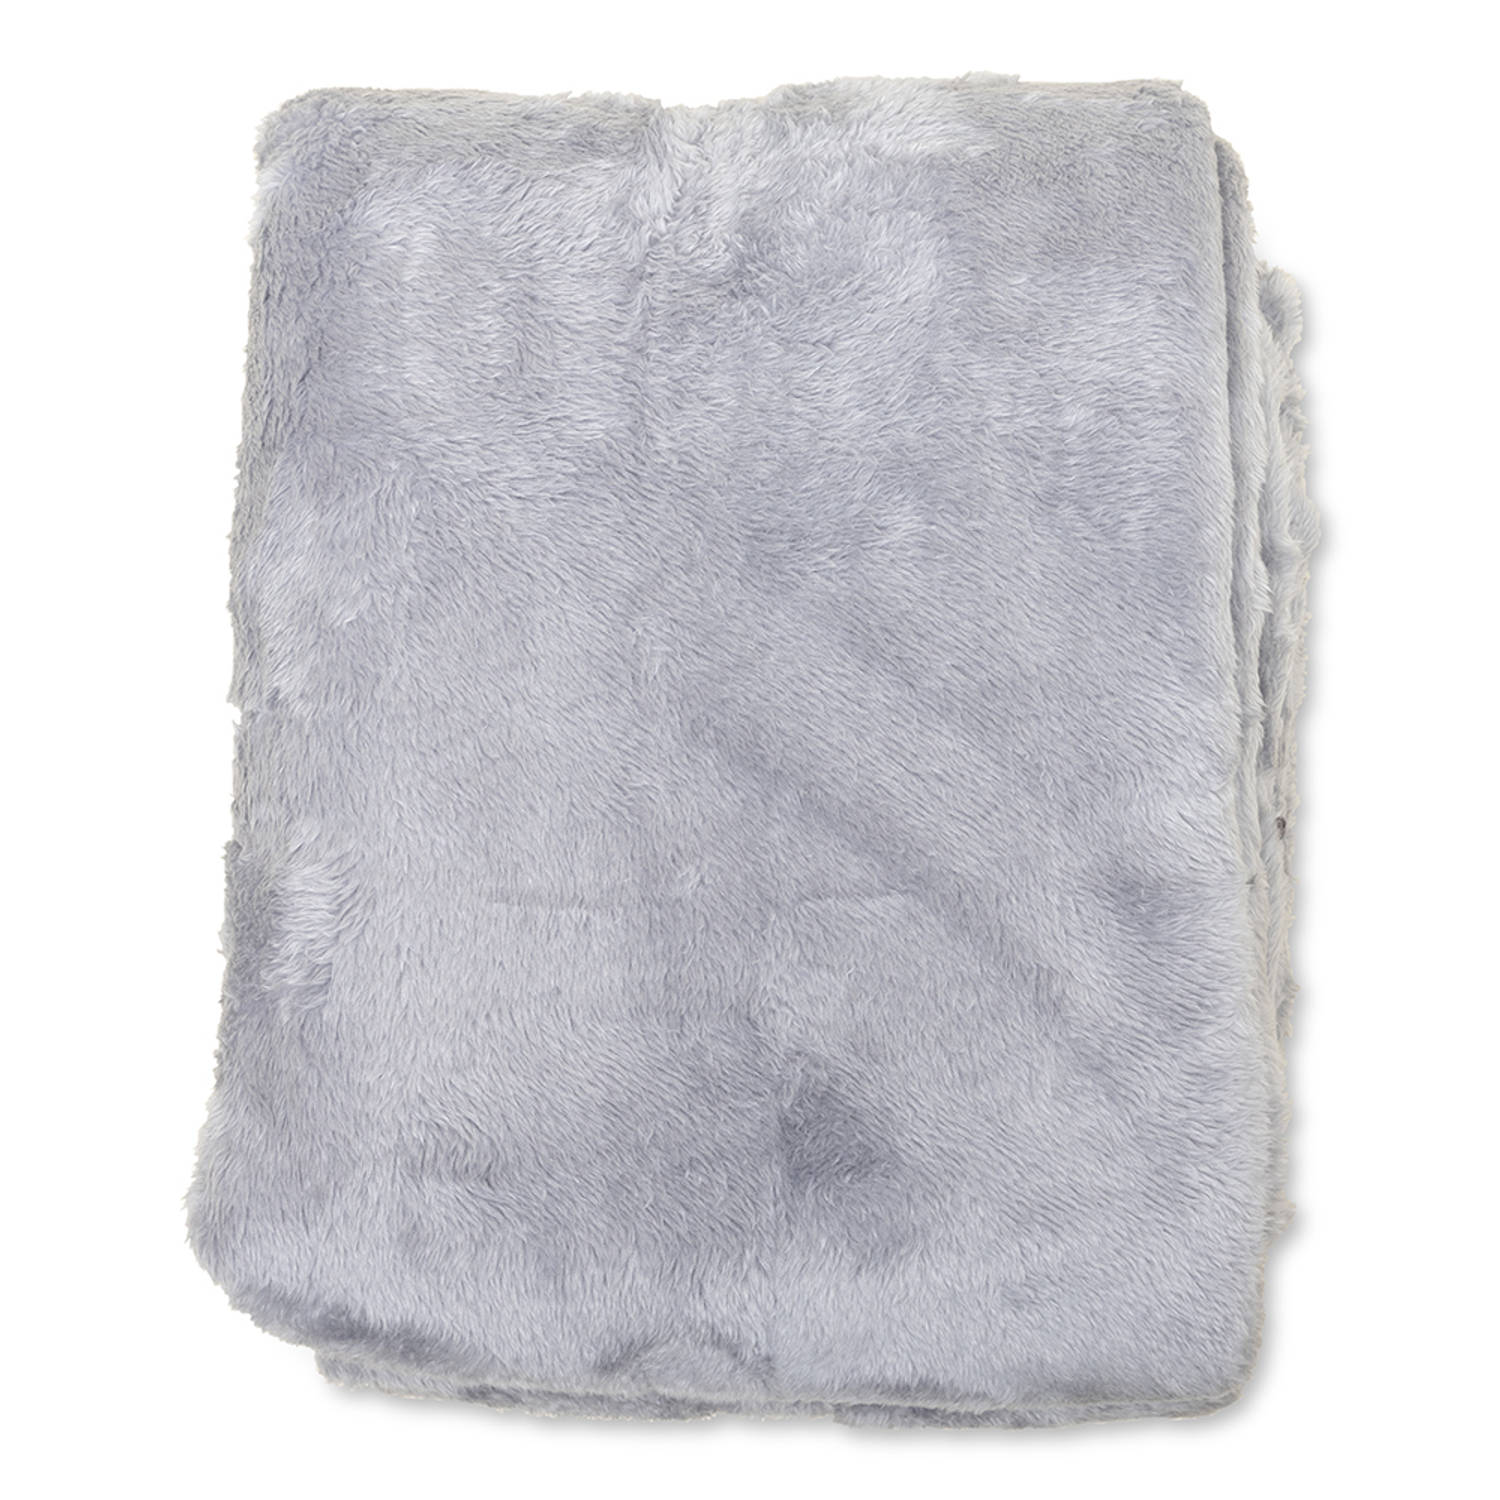 Wicotex-Plaid-deken-fleece plaid Fluffy grijs 150x200cm-Zacht en warme Fleece deken.